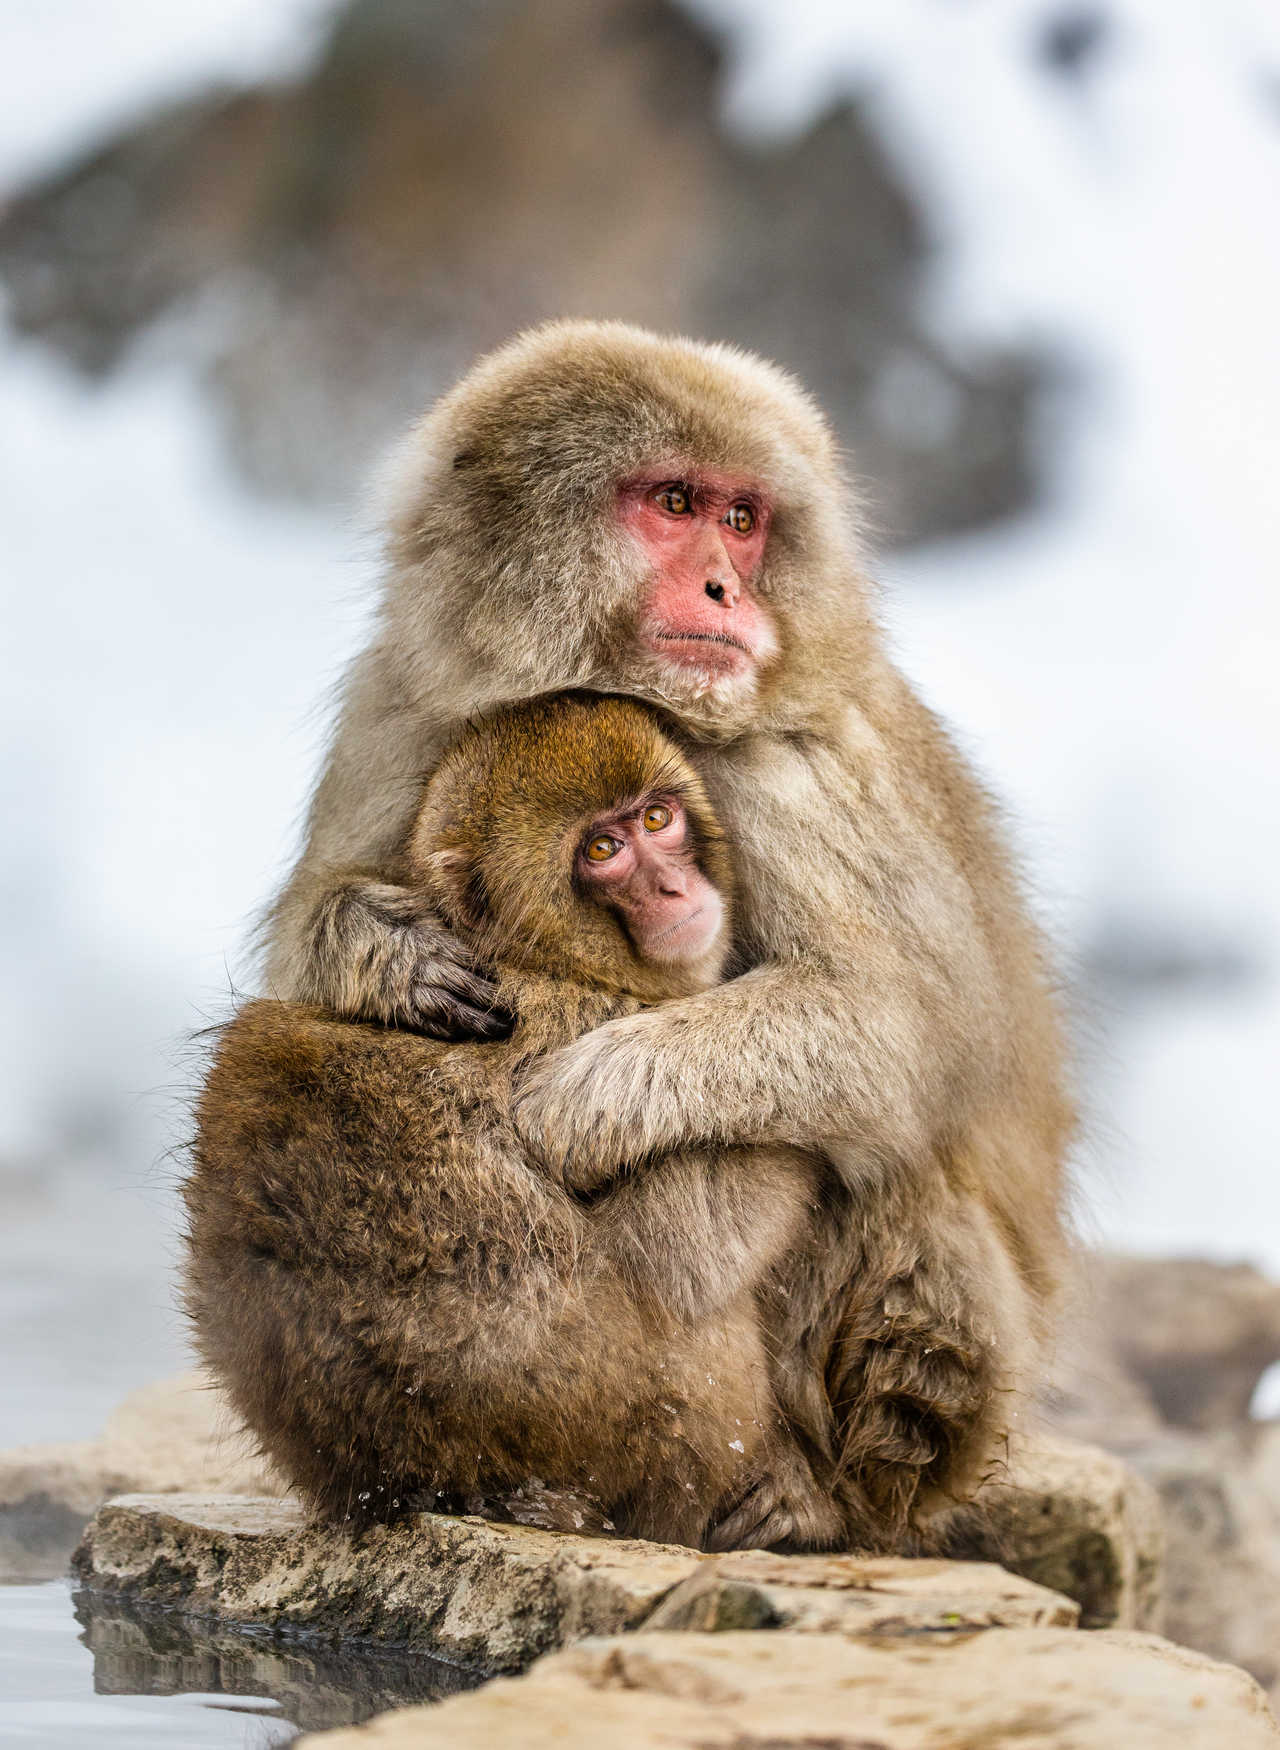 Macaque et son petit au Japon